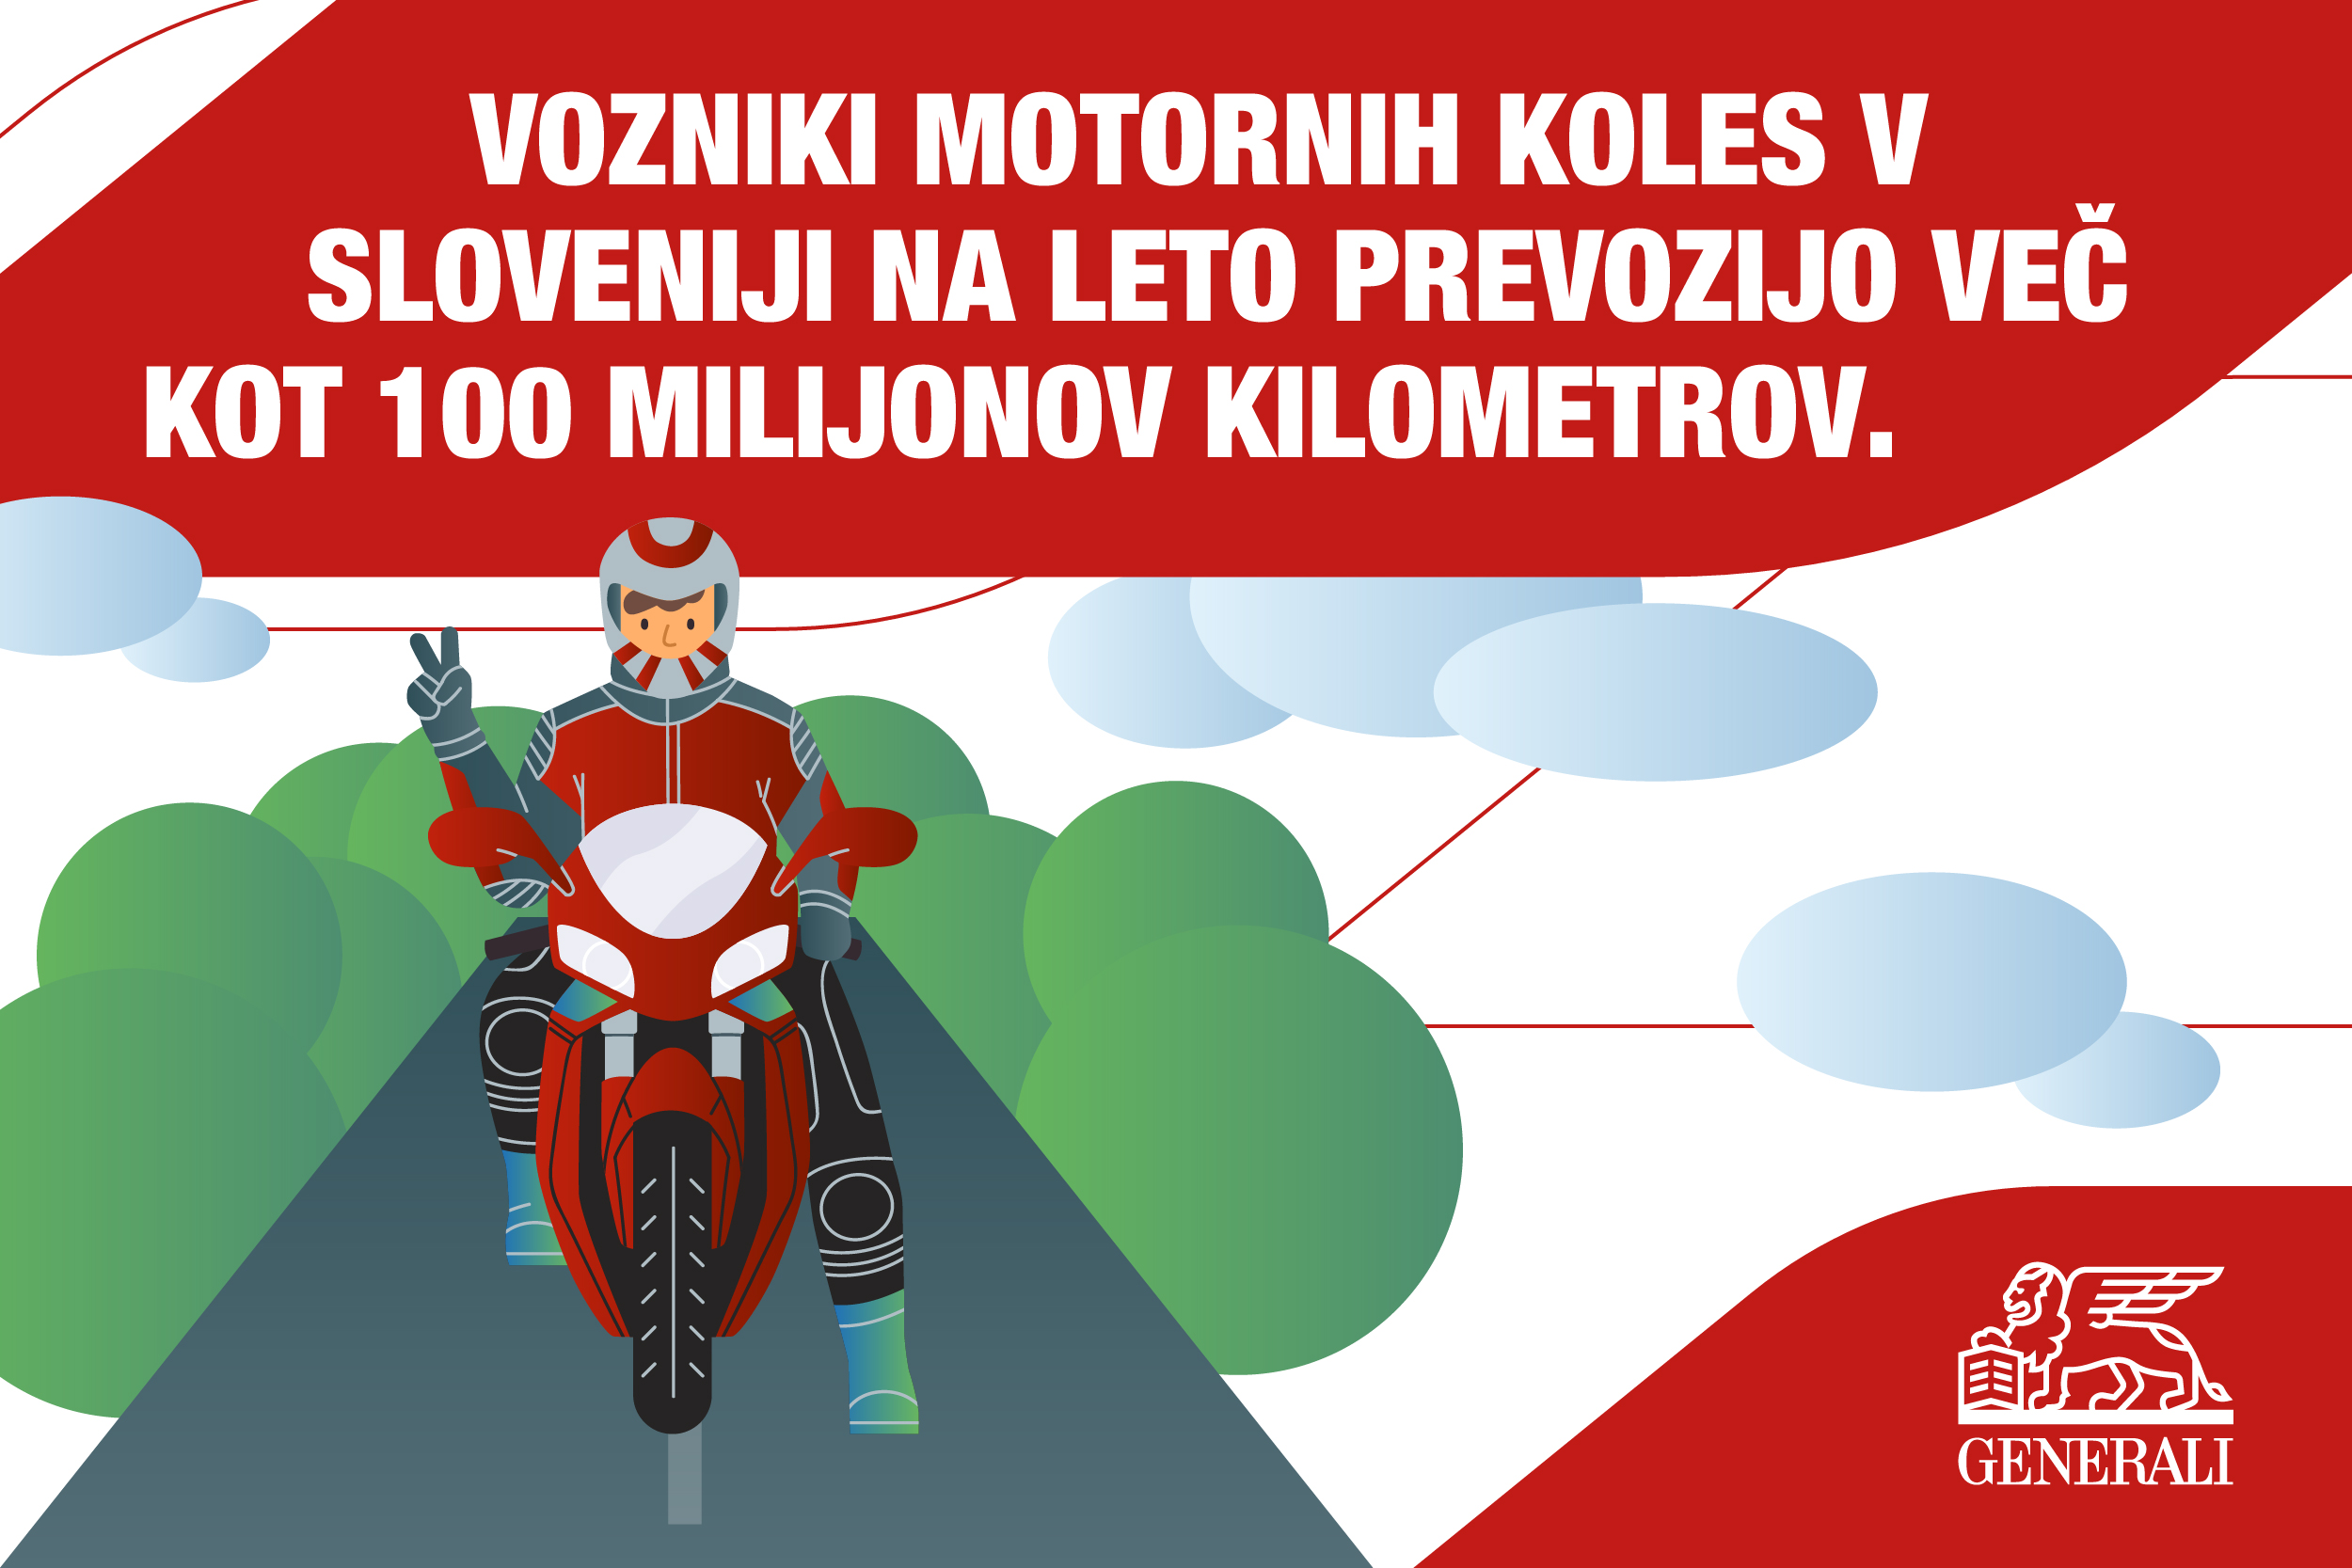 Vozniki motornih koles v Sloveniji na leto prevozijo več kot 100 milijonov kilometrov.